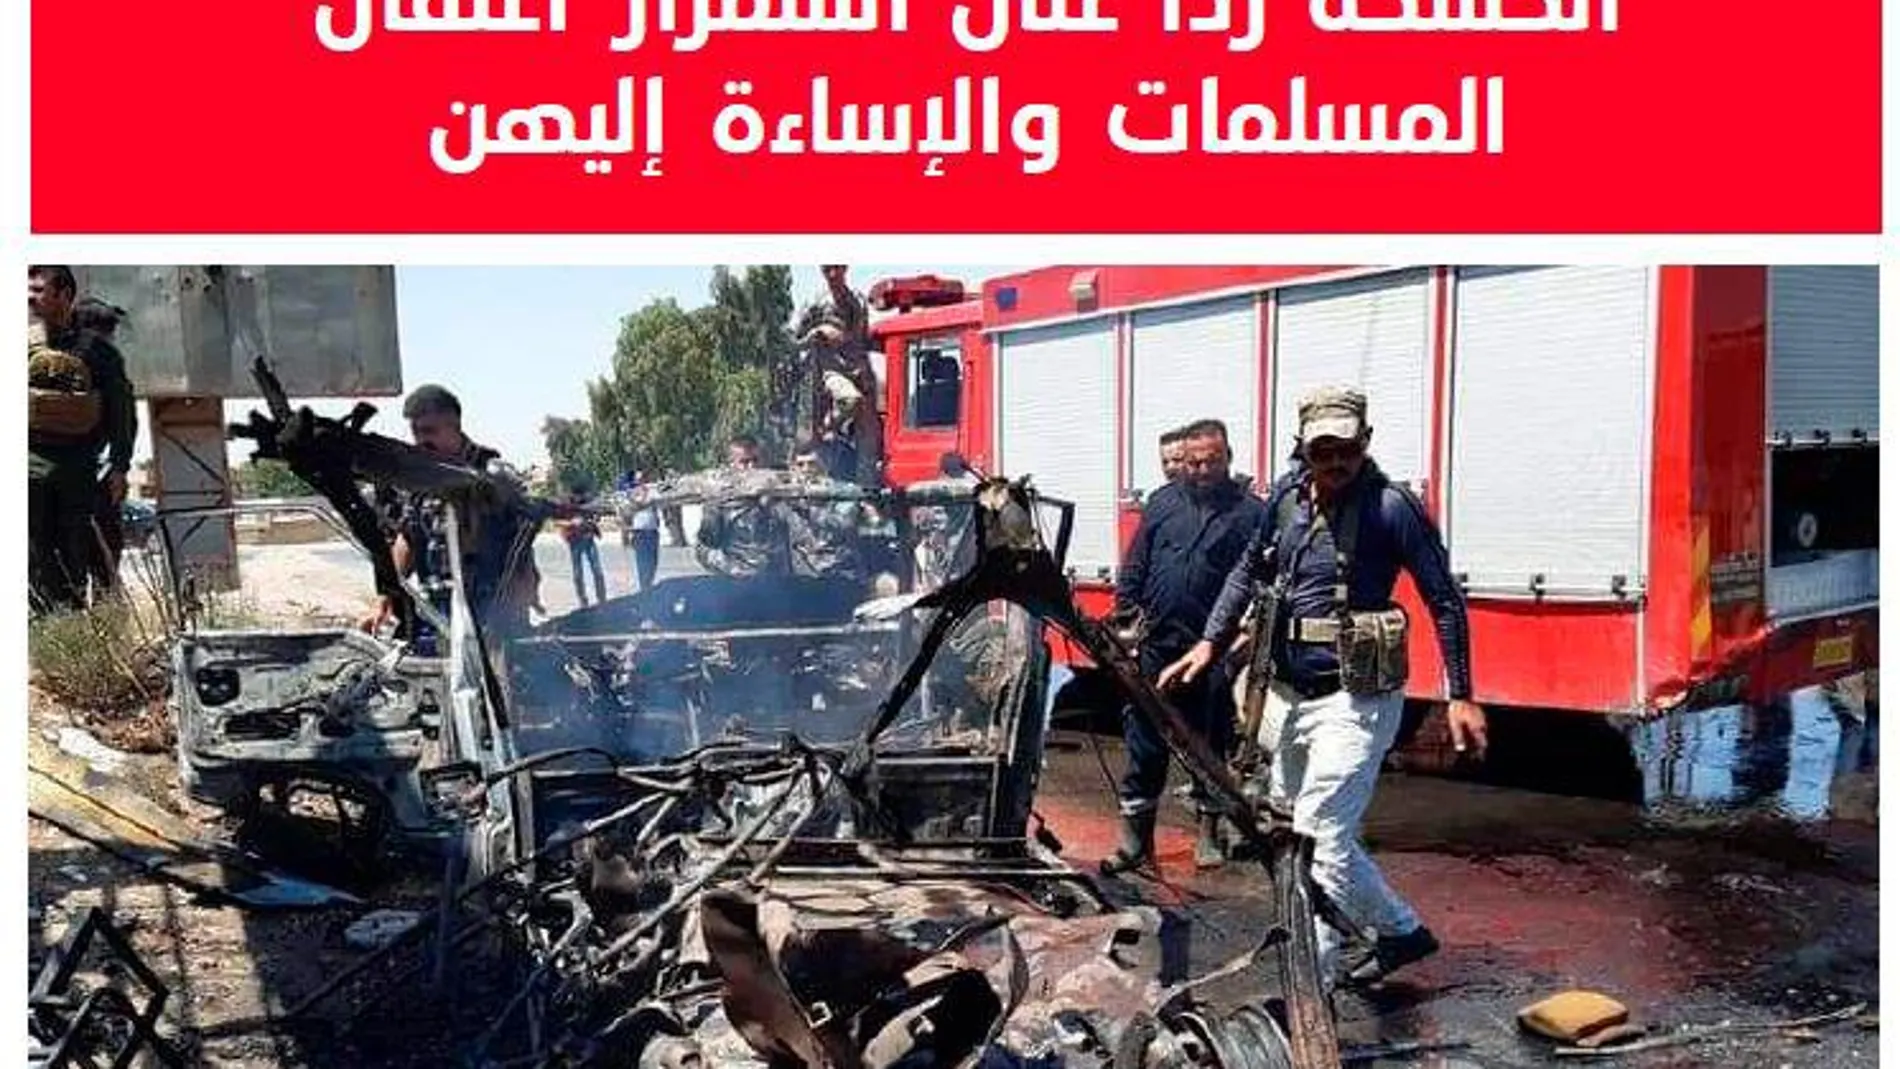 Restos de coche bomba en una imagen publicada por “Al Naba”